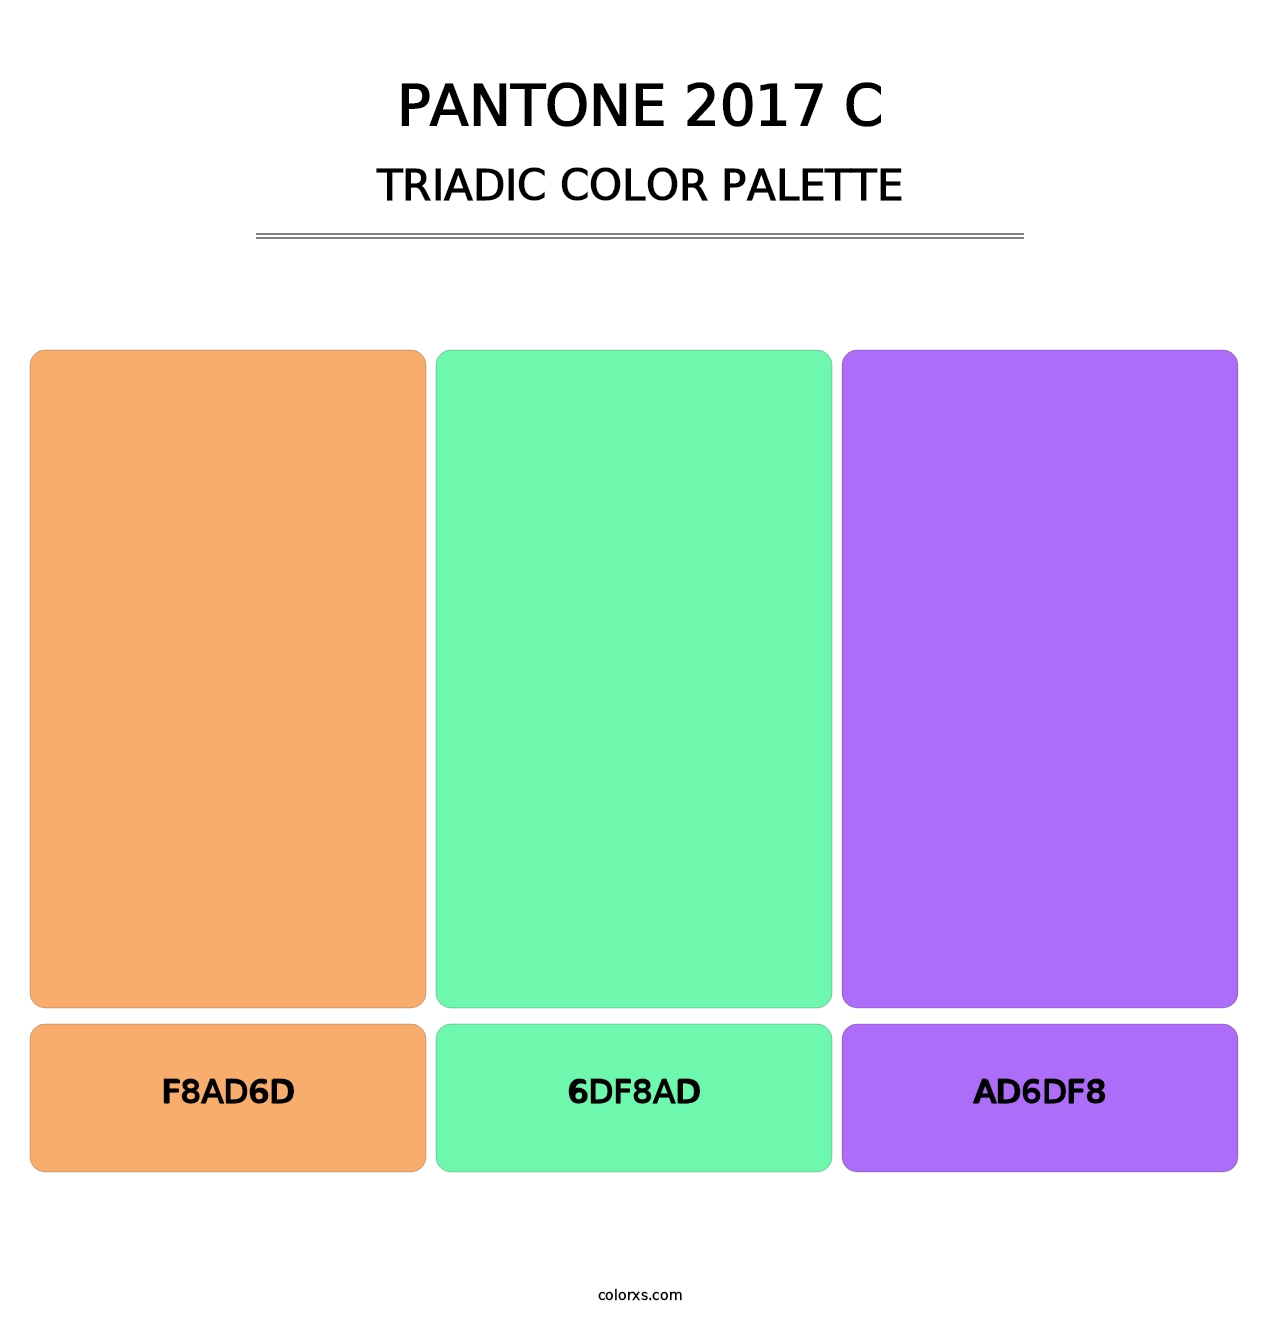 PANTONE 2017 C - Triadic Color Palette